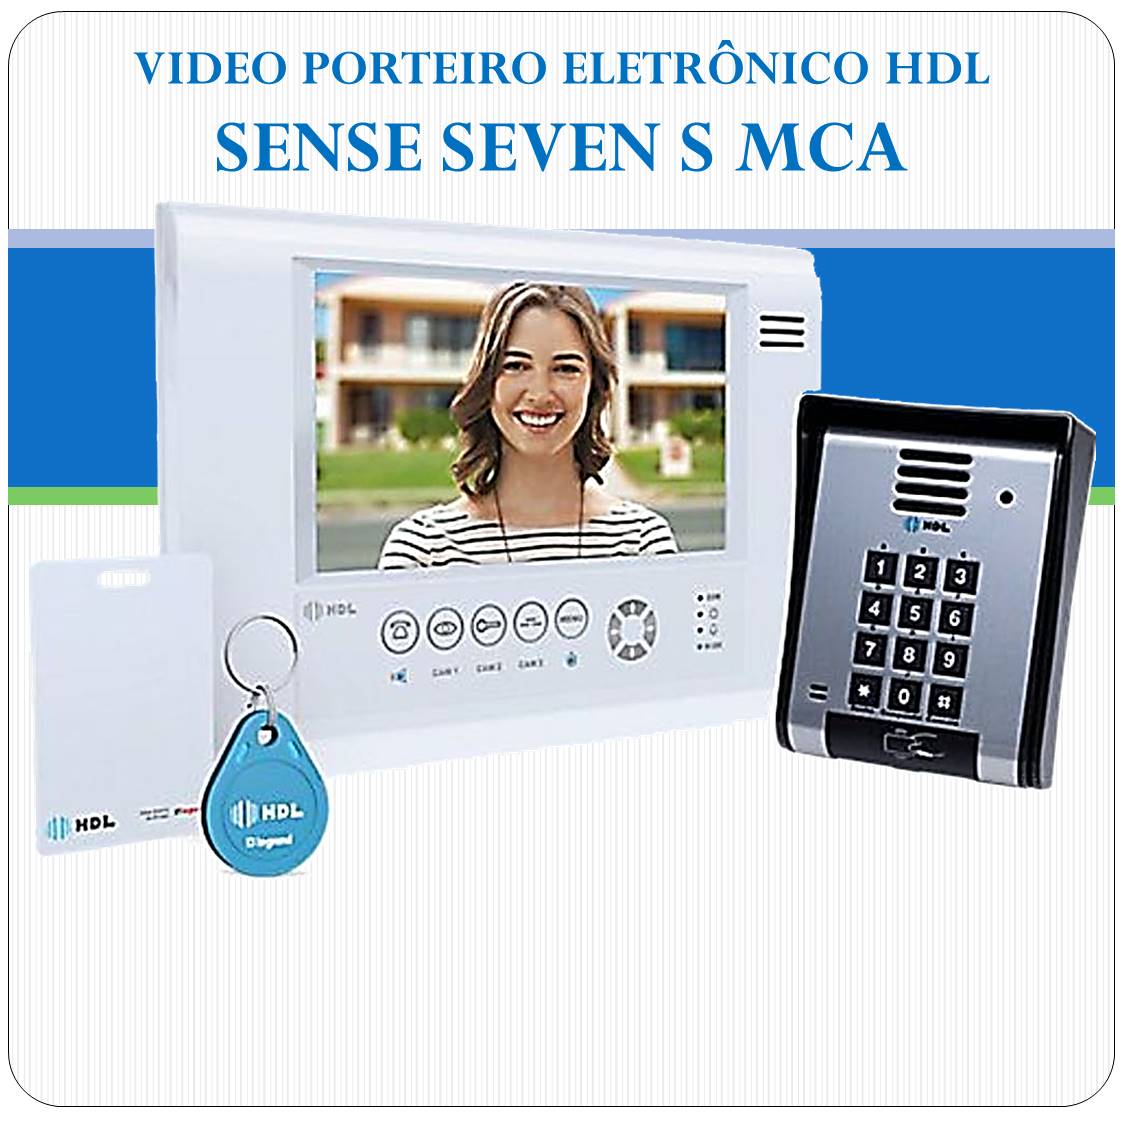 Video Porteiro Eletrônico HDL - Sense Seven S MCA